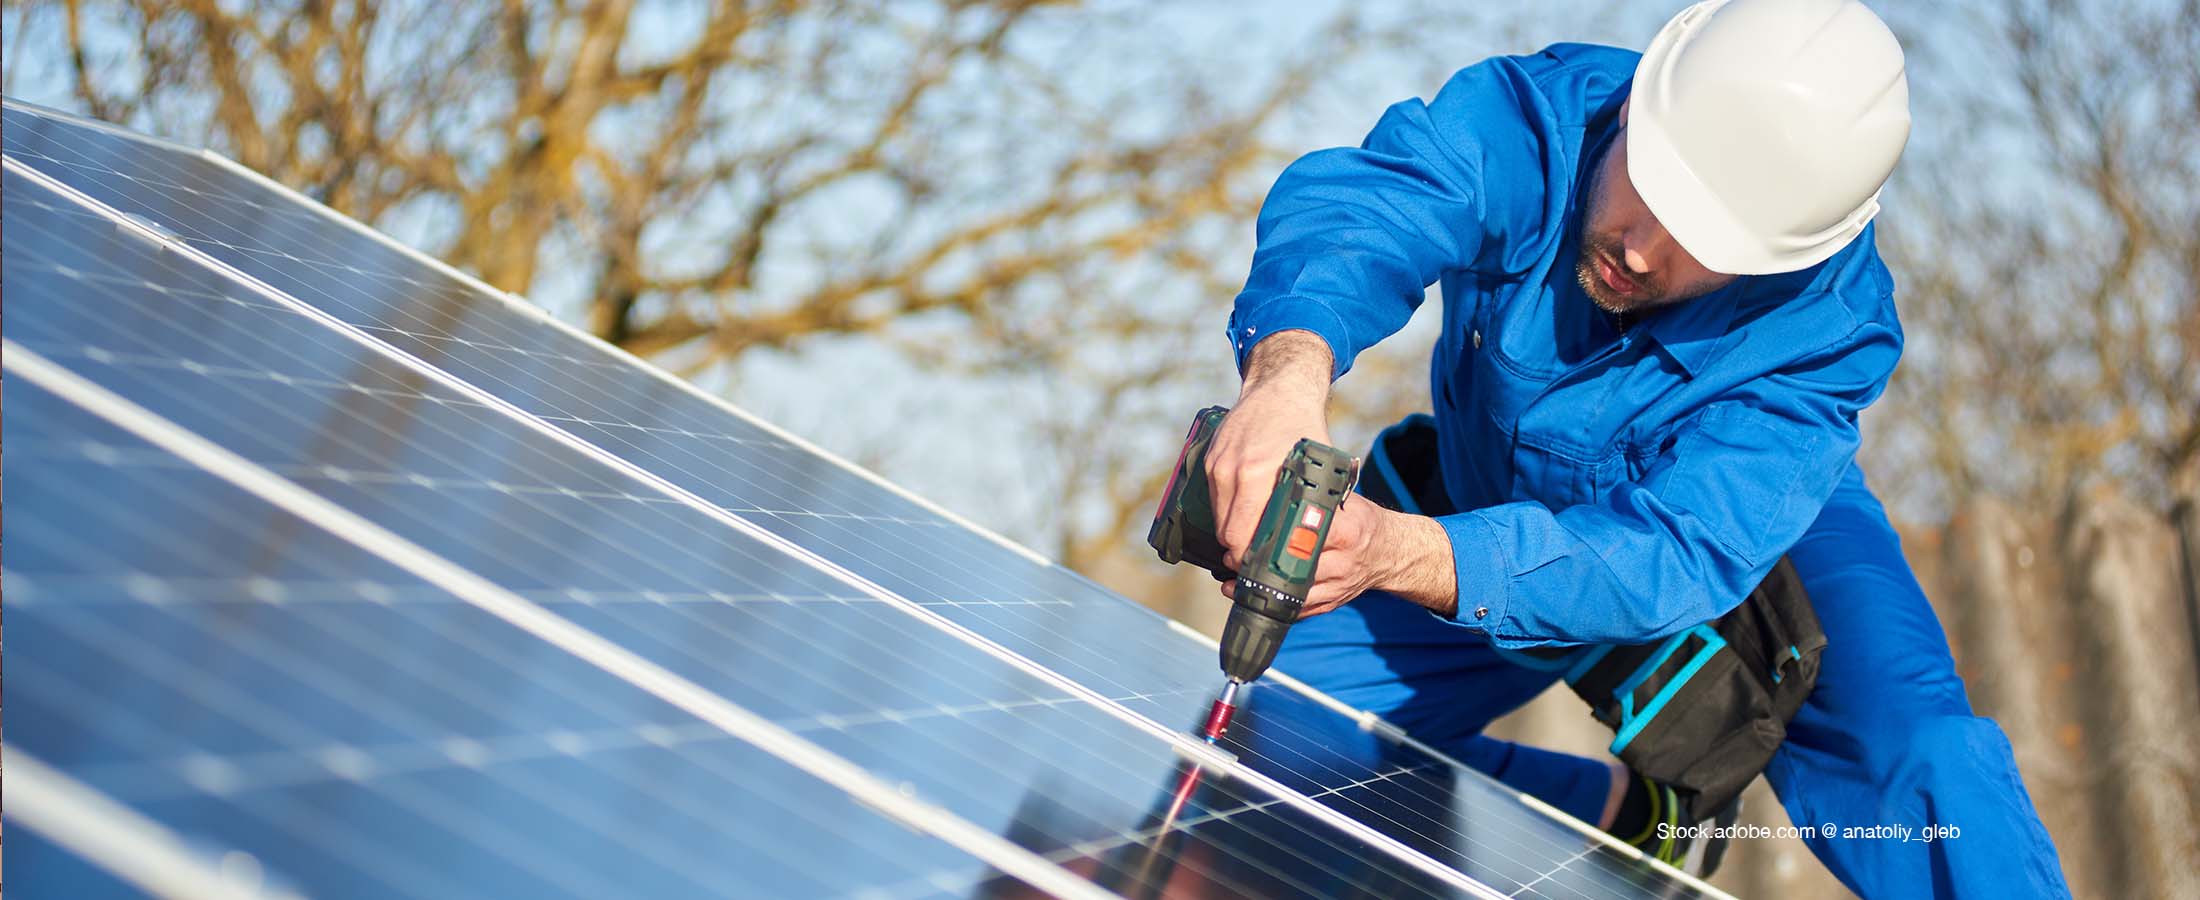 Les panneaux solaires pour les PME : avantages et contraintes